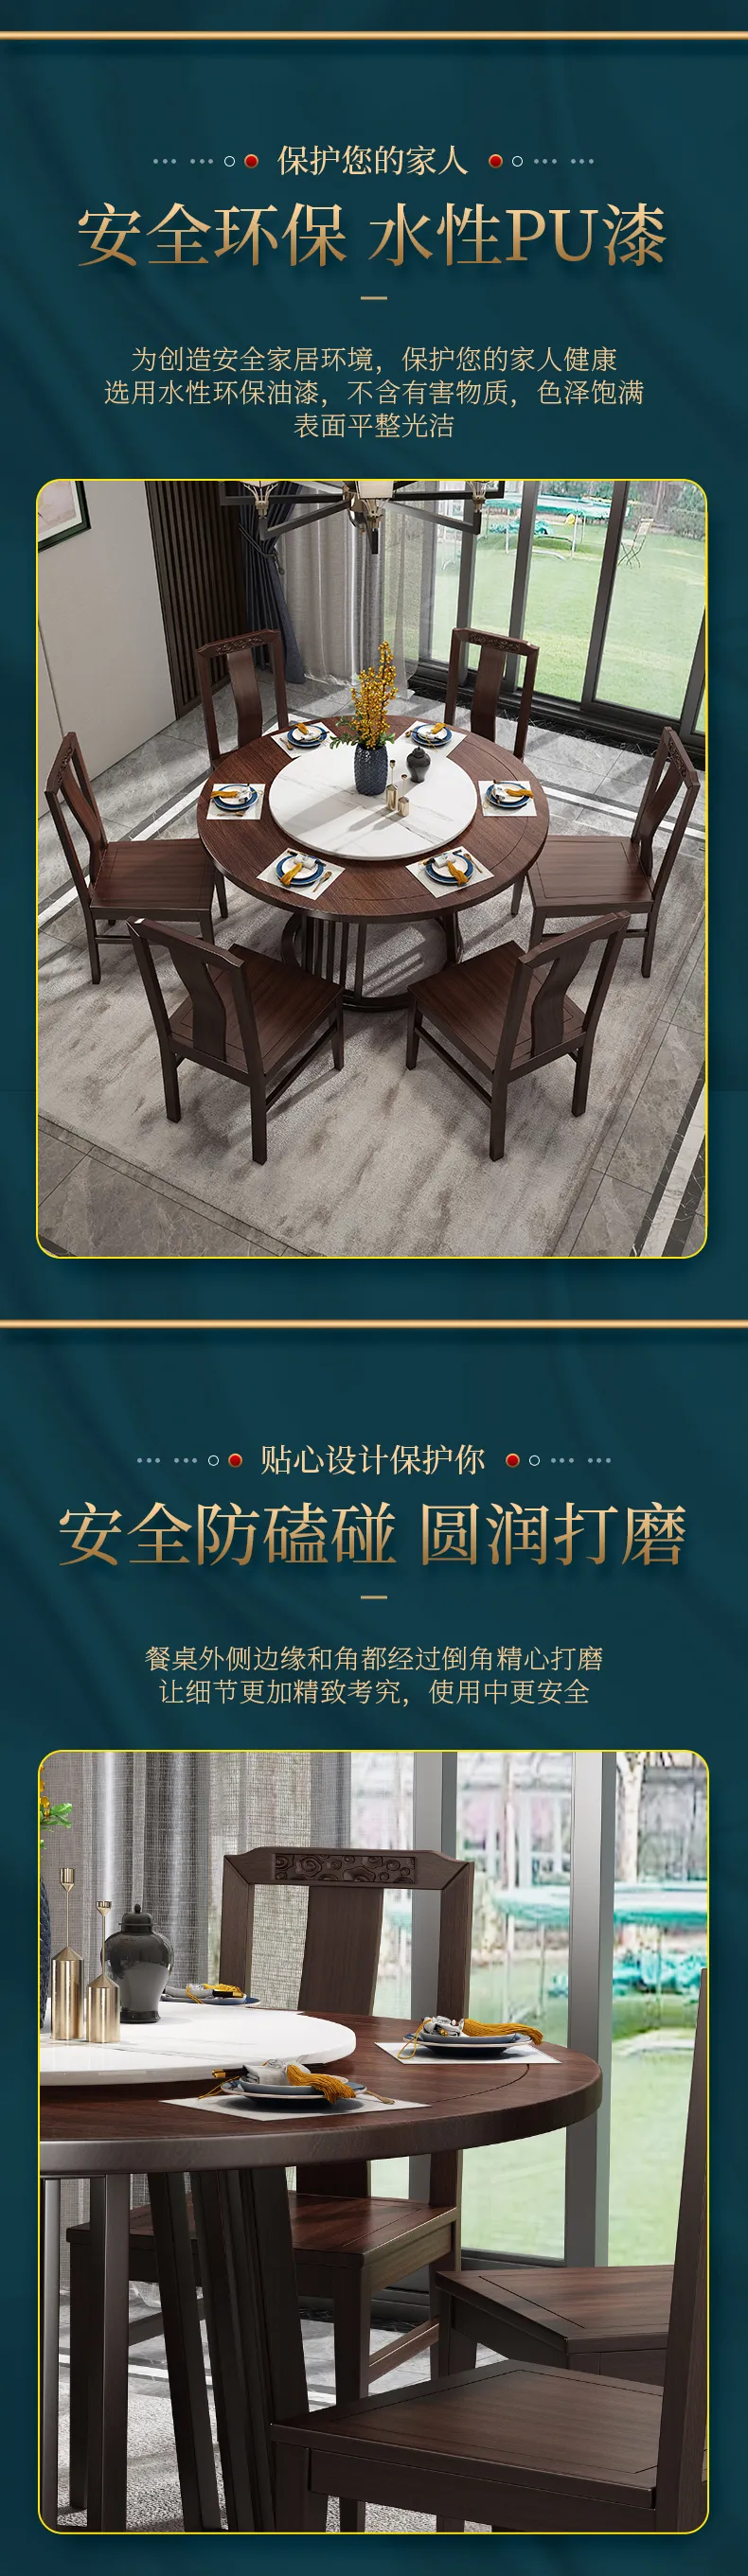 华松居 乌金木新中式实木餐桌简约家用圆桌饭桌餐桌椅 #2002(图5)